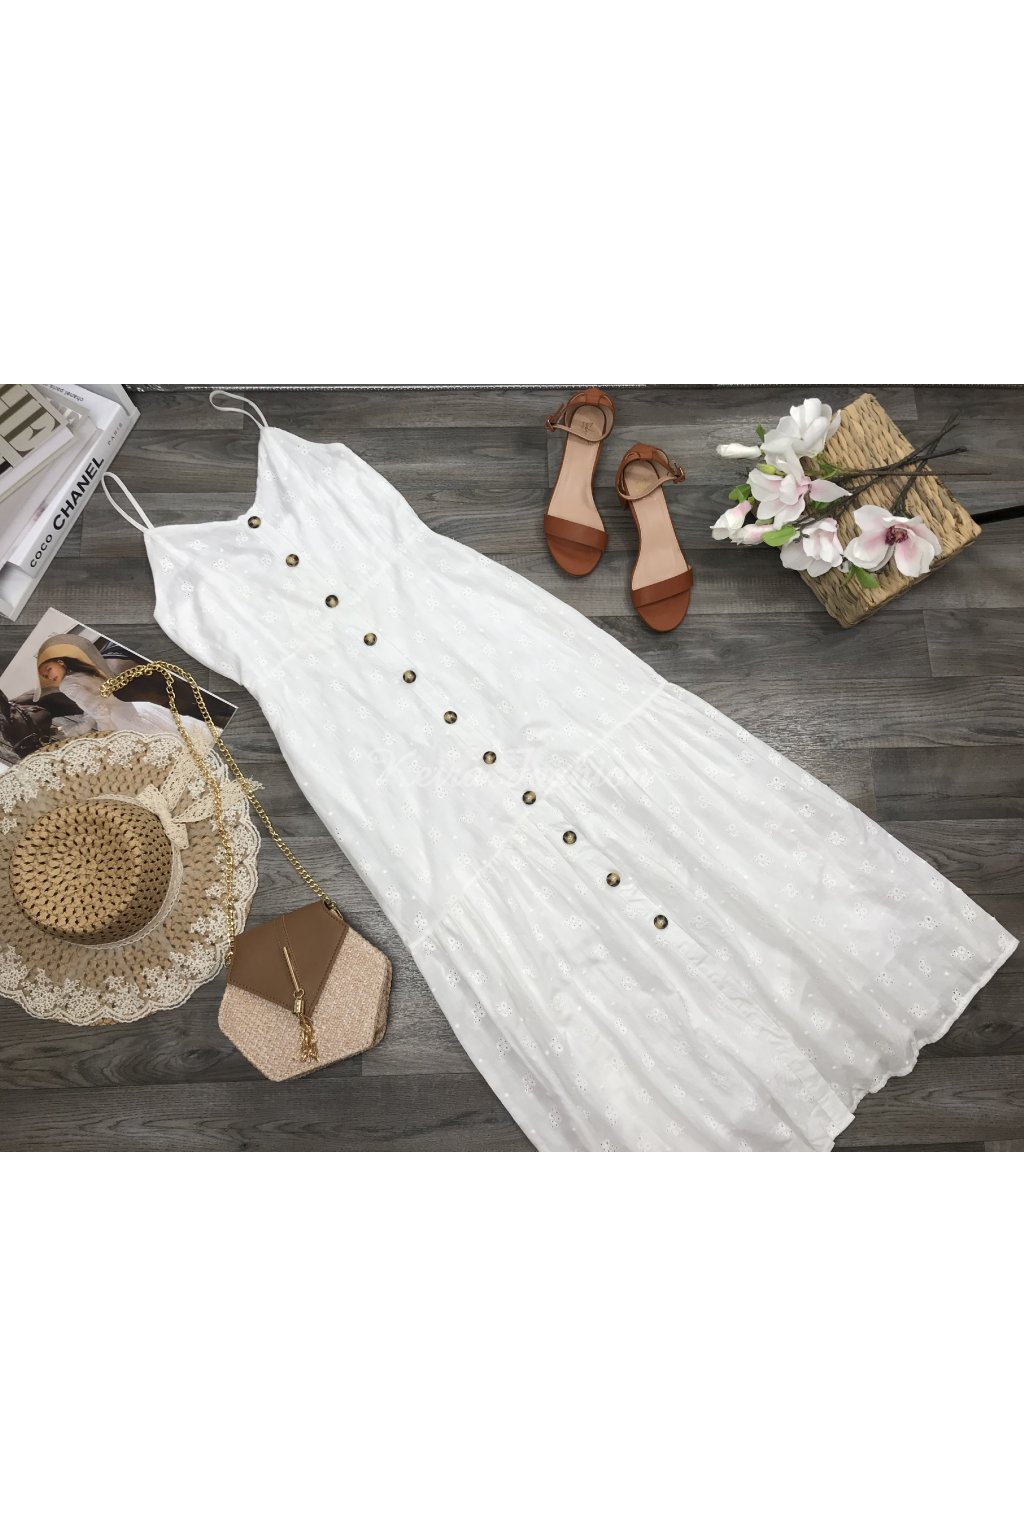 biele dlhé perforované šaty na gombíky